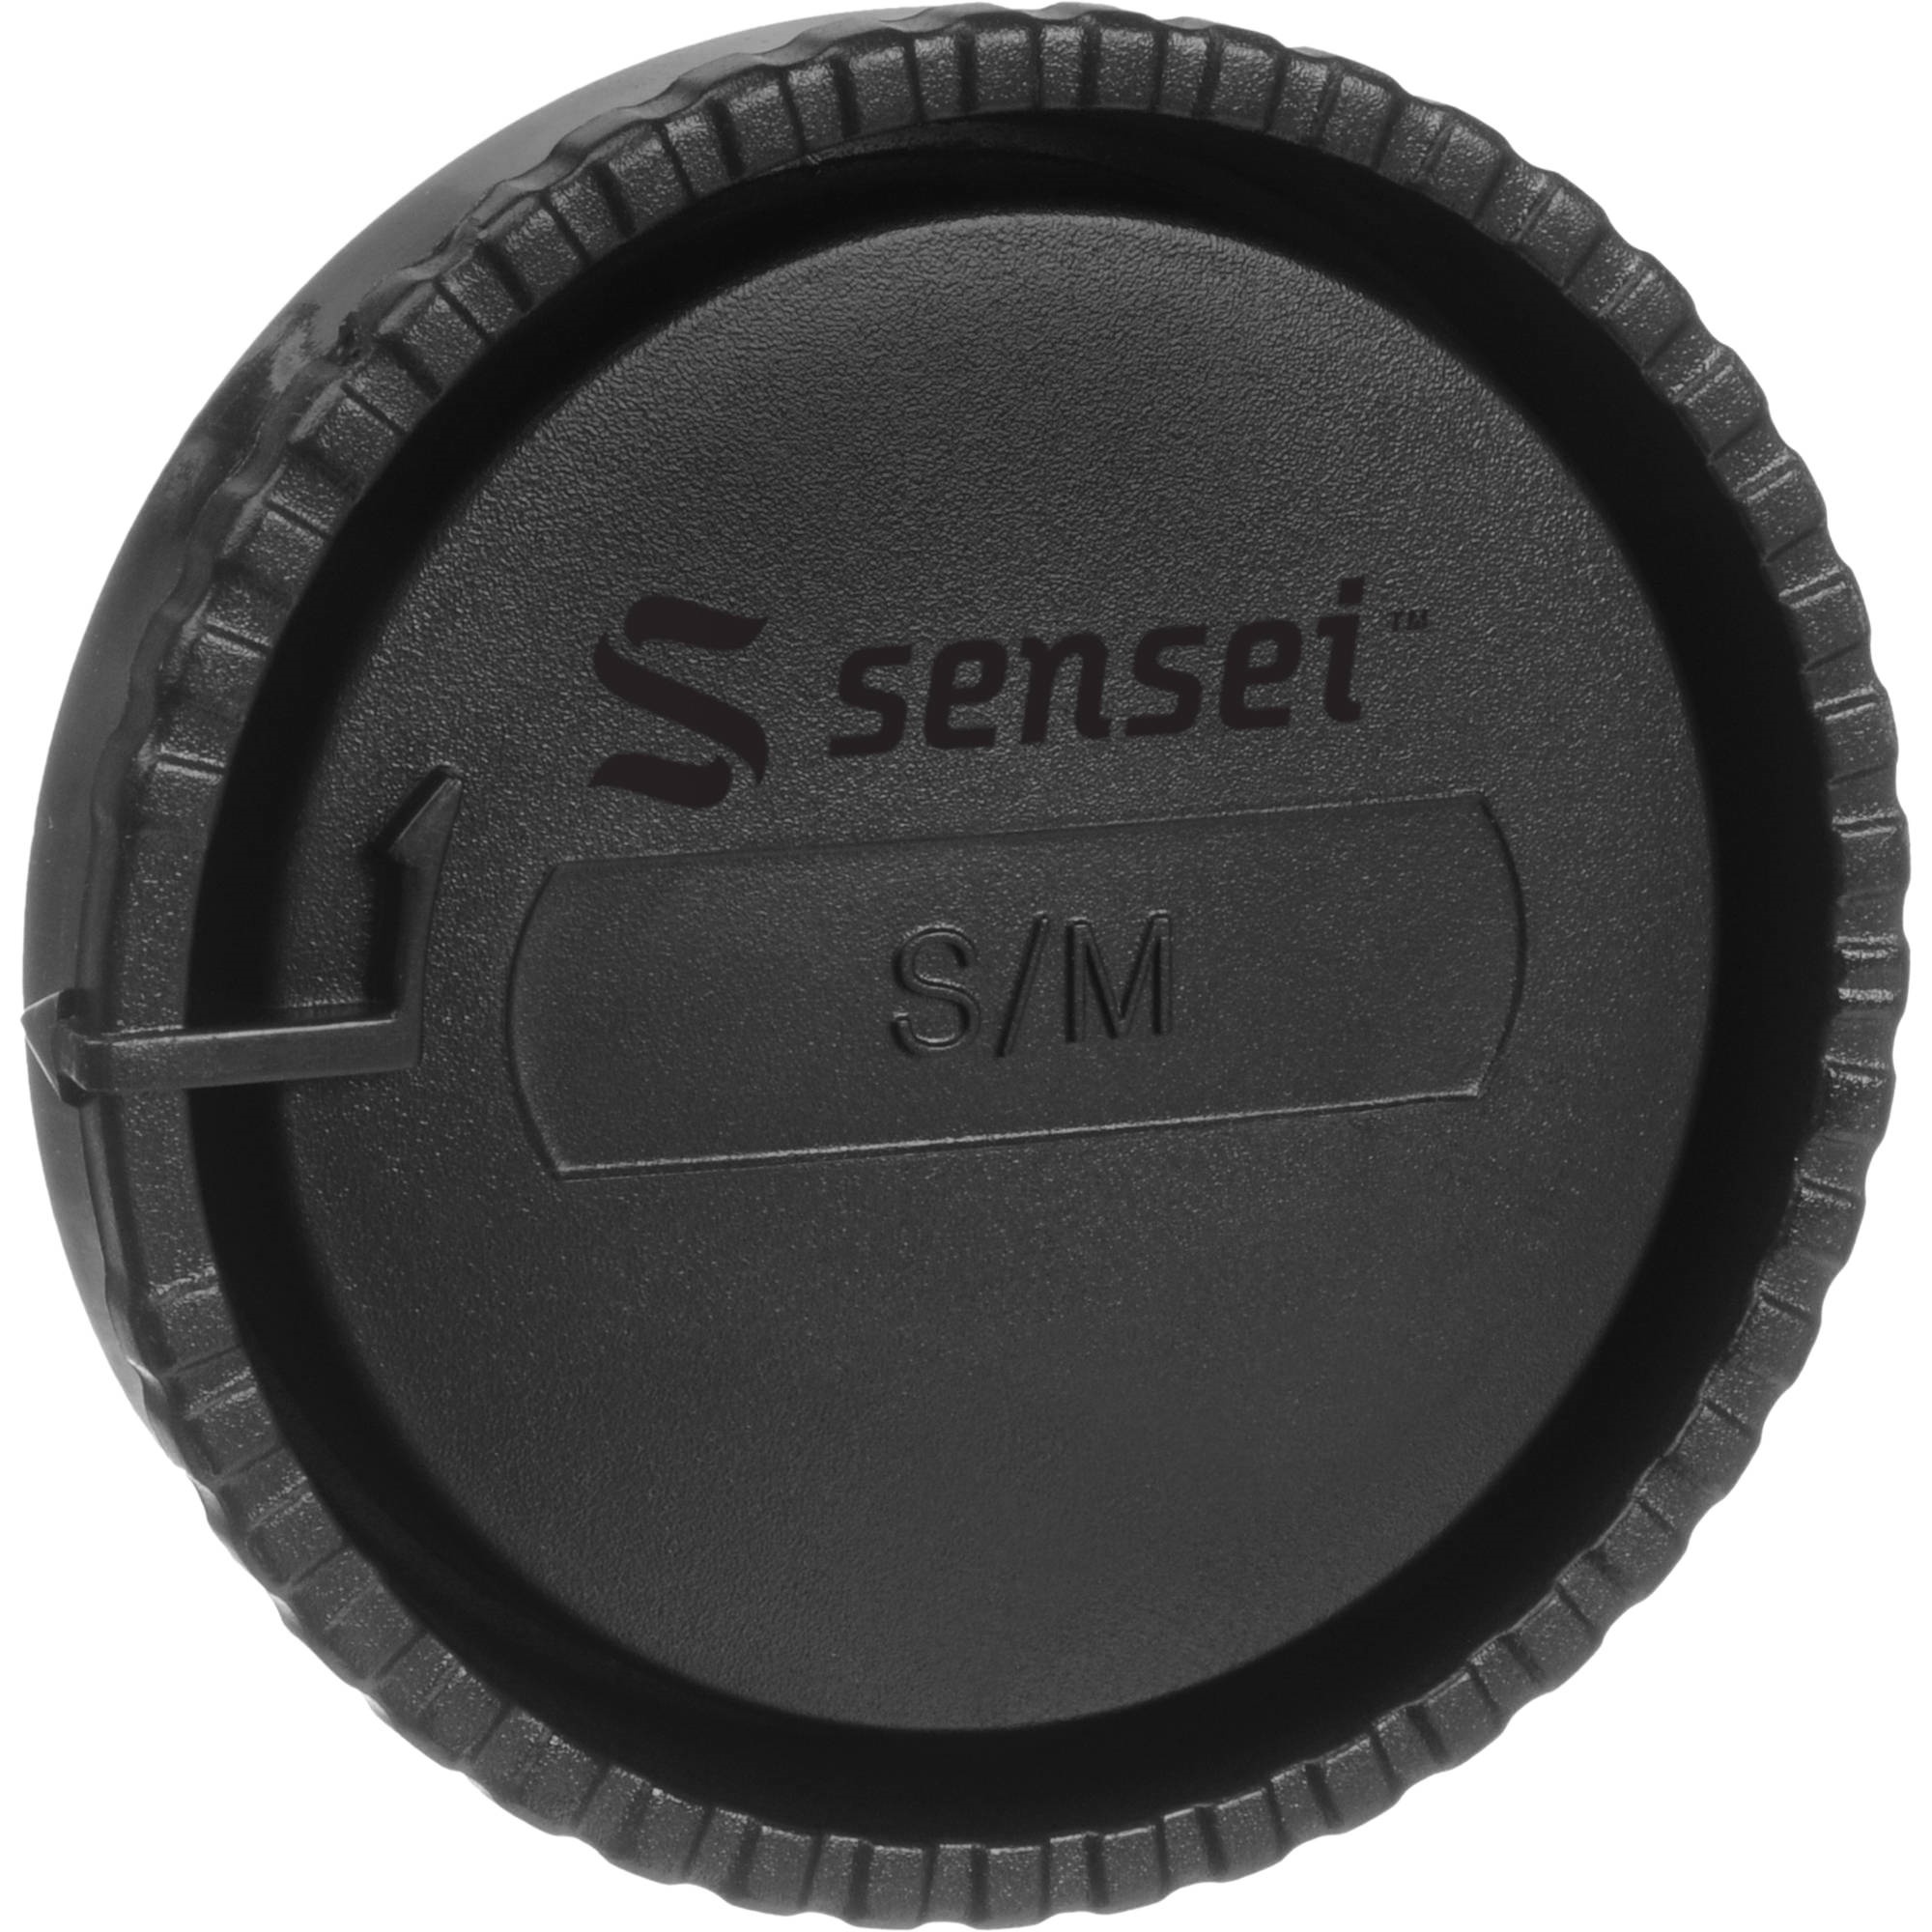 Sensei Rear Lens Cap for Sony A/Minolta Maxxum Lenses